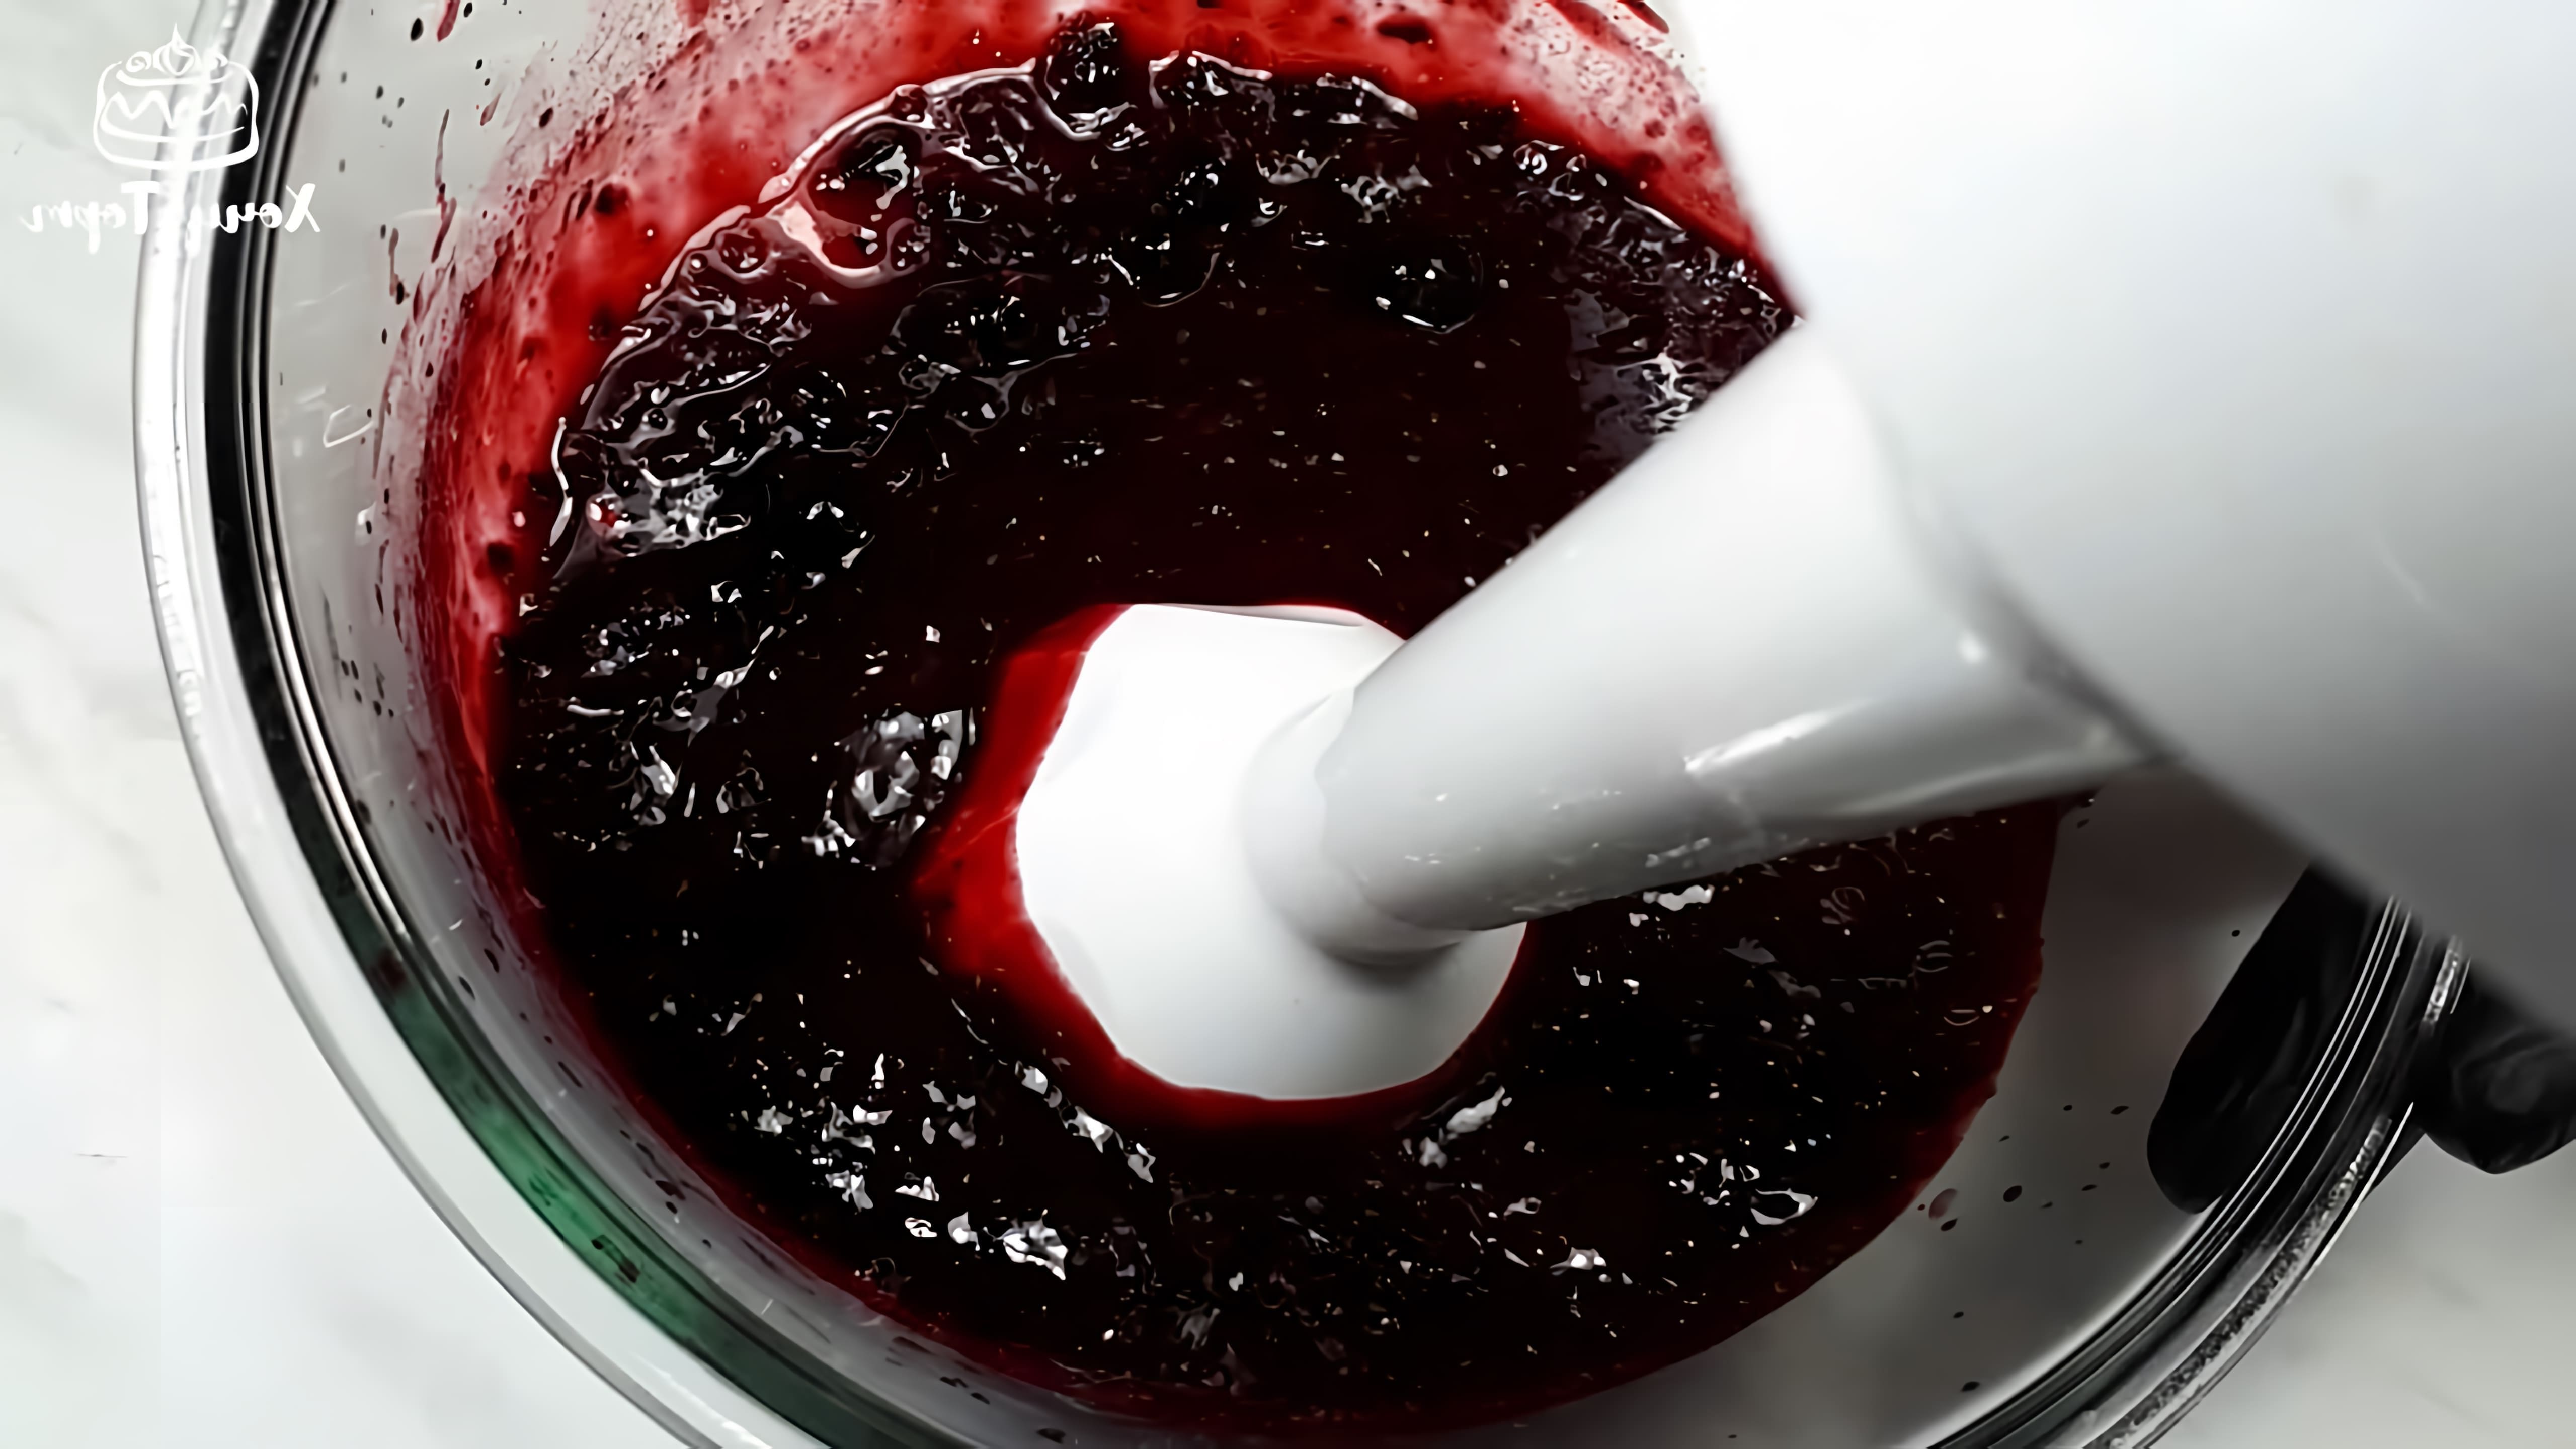 В данном видео демонстрируется процесс приготовления ягодной прослойки из замороженной черной смородины для тортов, пирожных и десертов